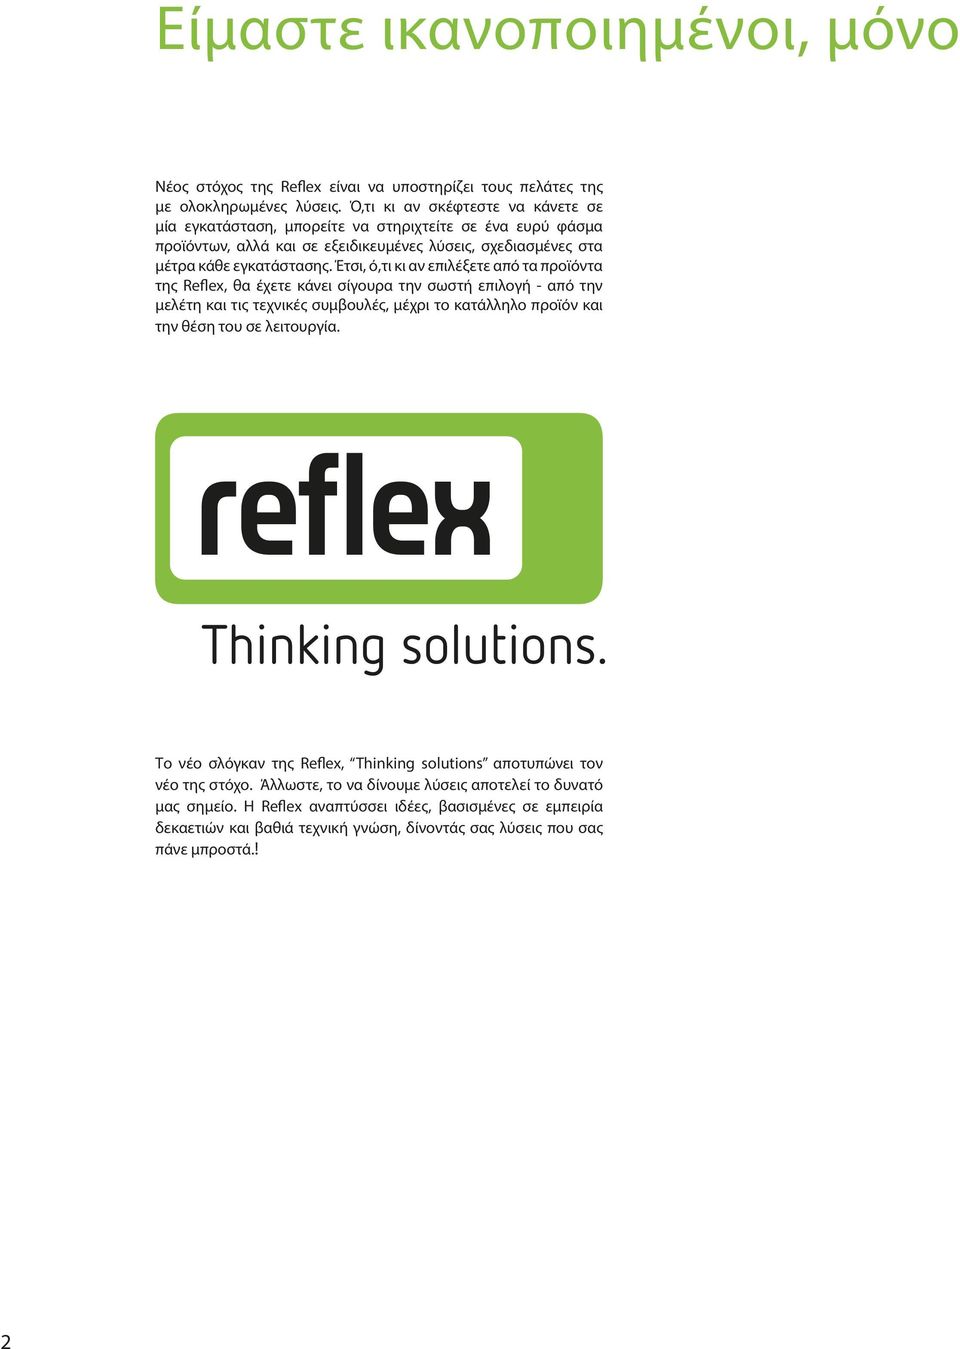 Έτσι, ό,τι κι αν επιλέξετε από τα προϊόντα της Reflex, θα έχετε κάνει σίγουρα την σωστή επιλογή - από την μελέτη και τις τεχνικές συμβουλές, μέχρι το κατάλληλο προϊόν και την θέση του σε